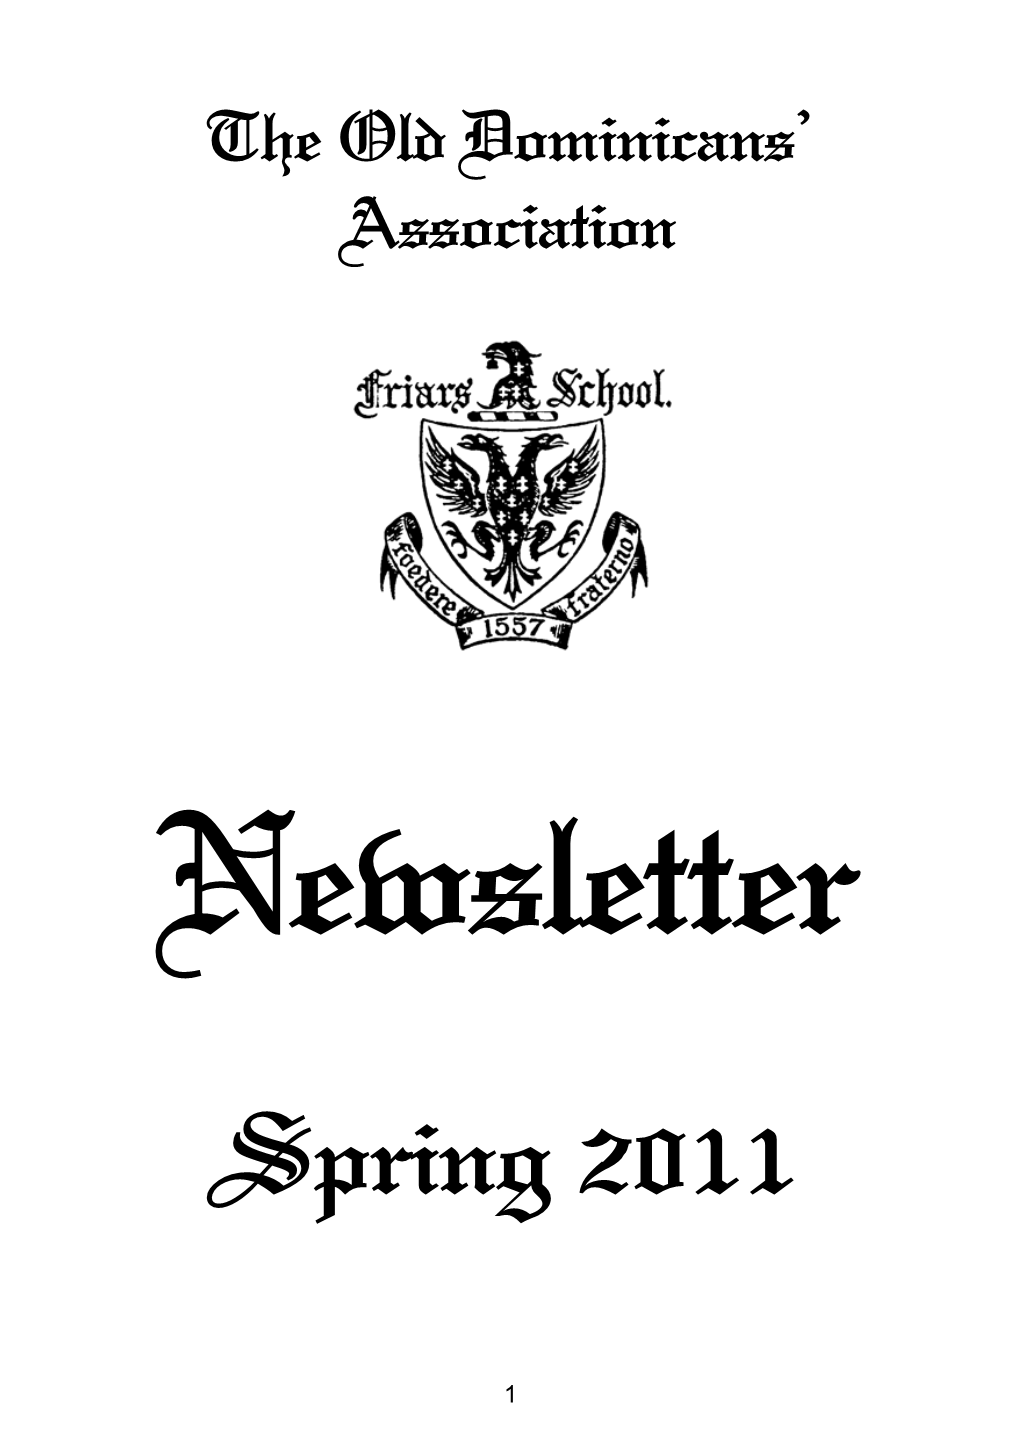 Newsletter Spring 2011